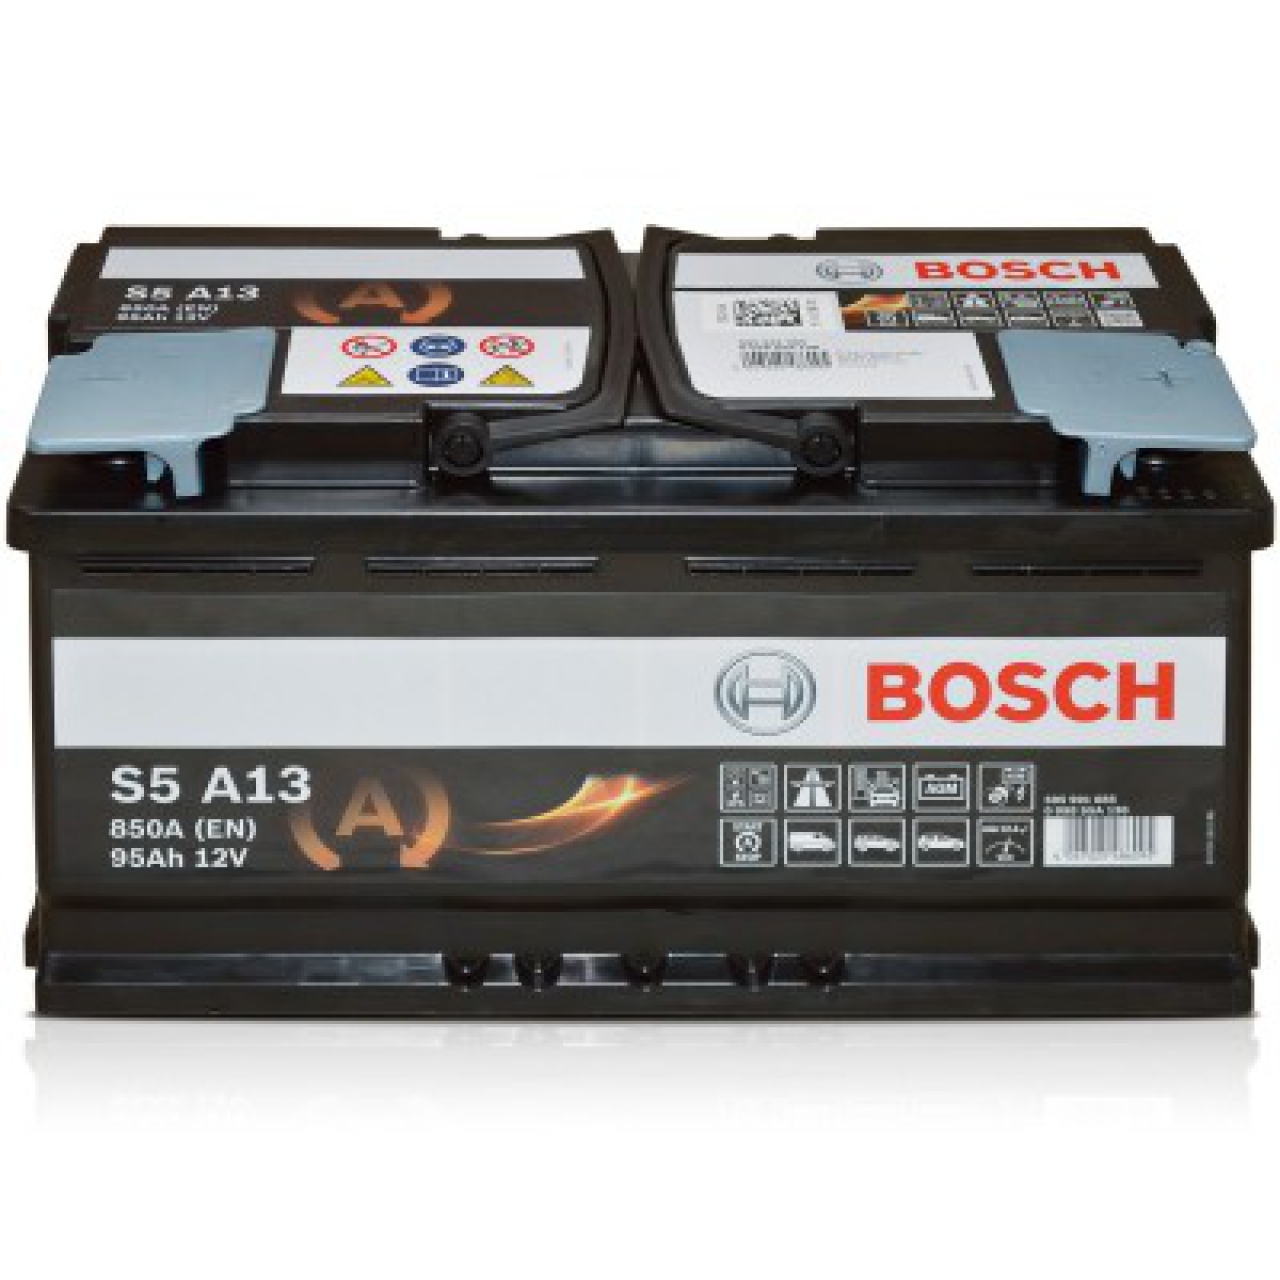 Bosch S5 A13